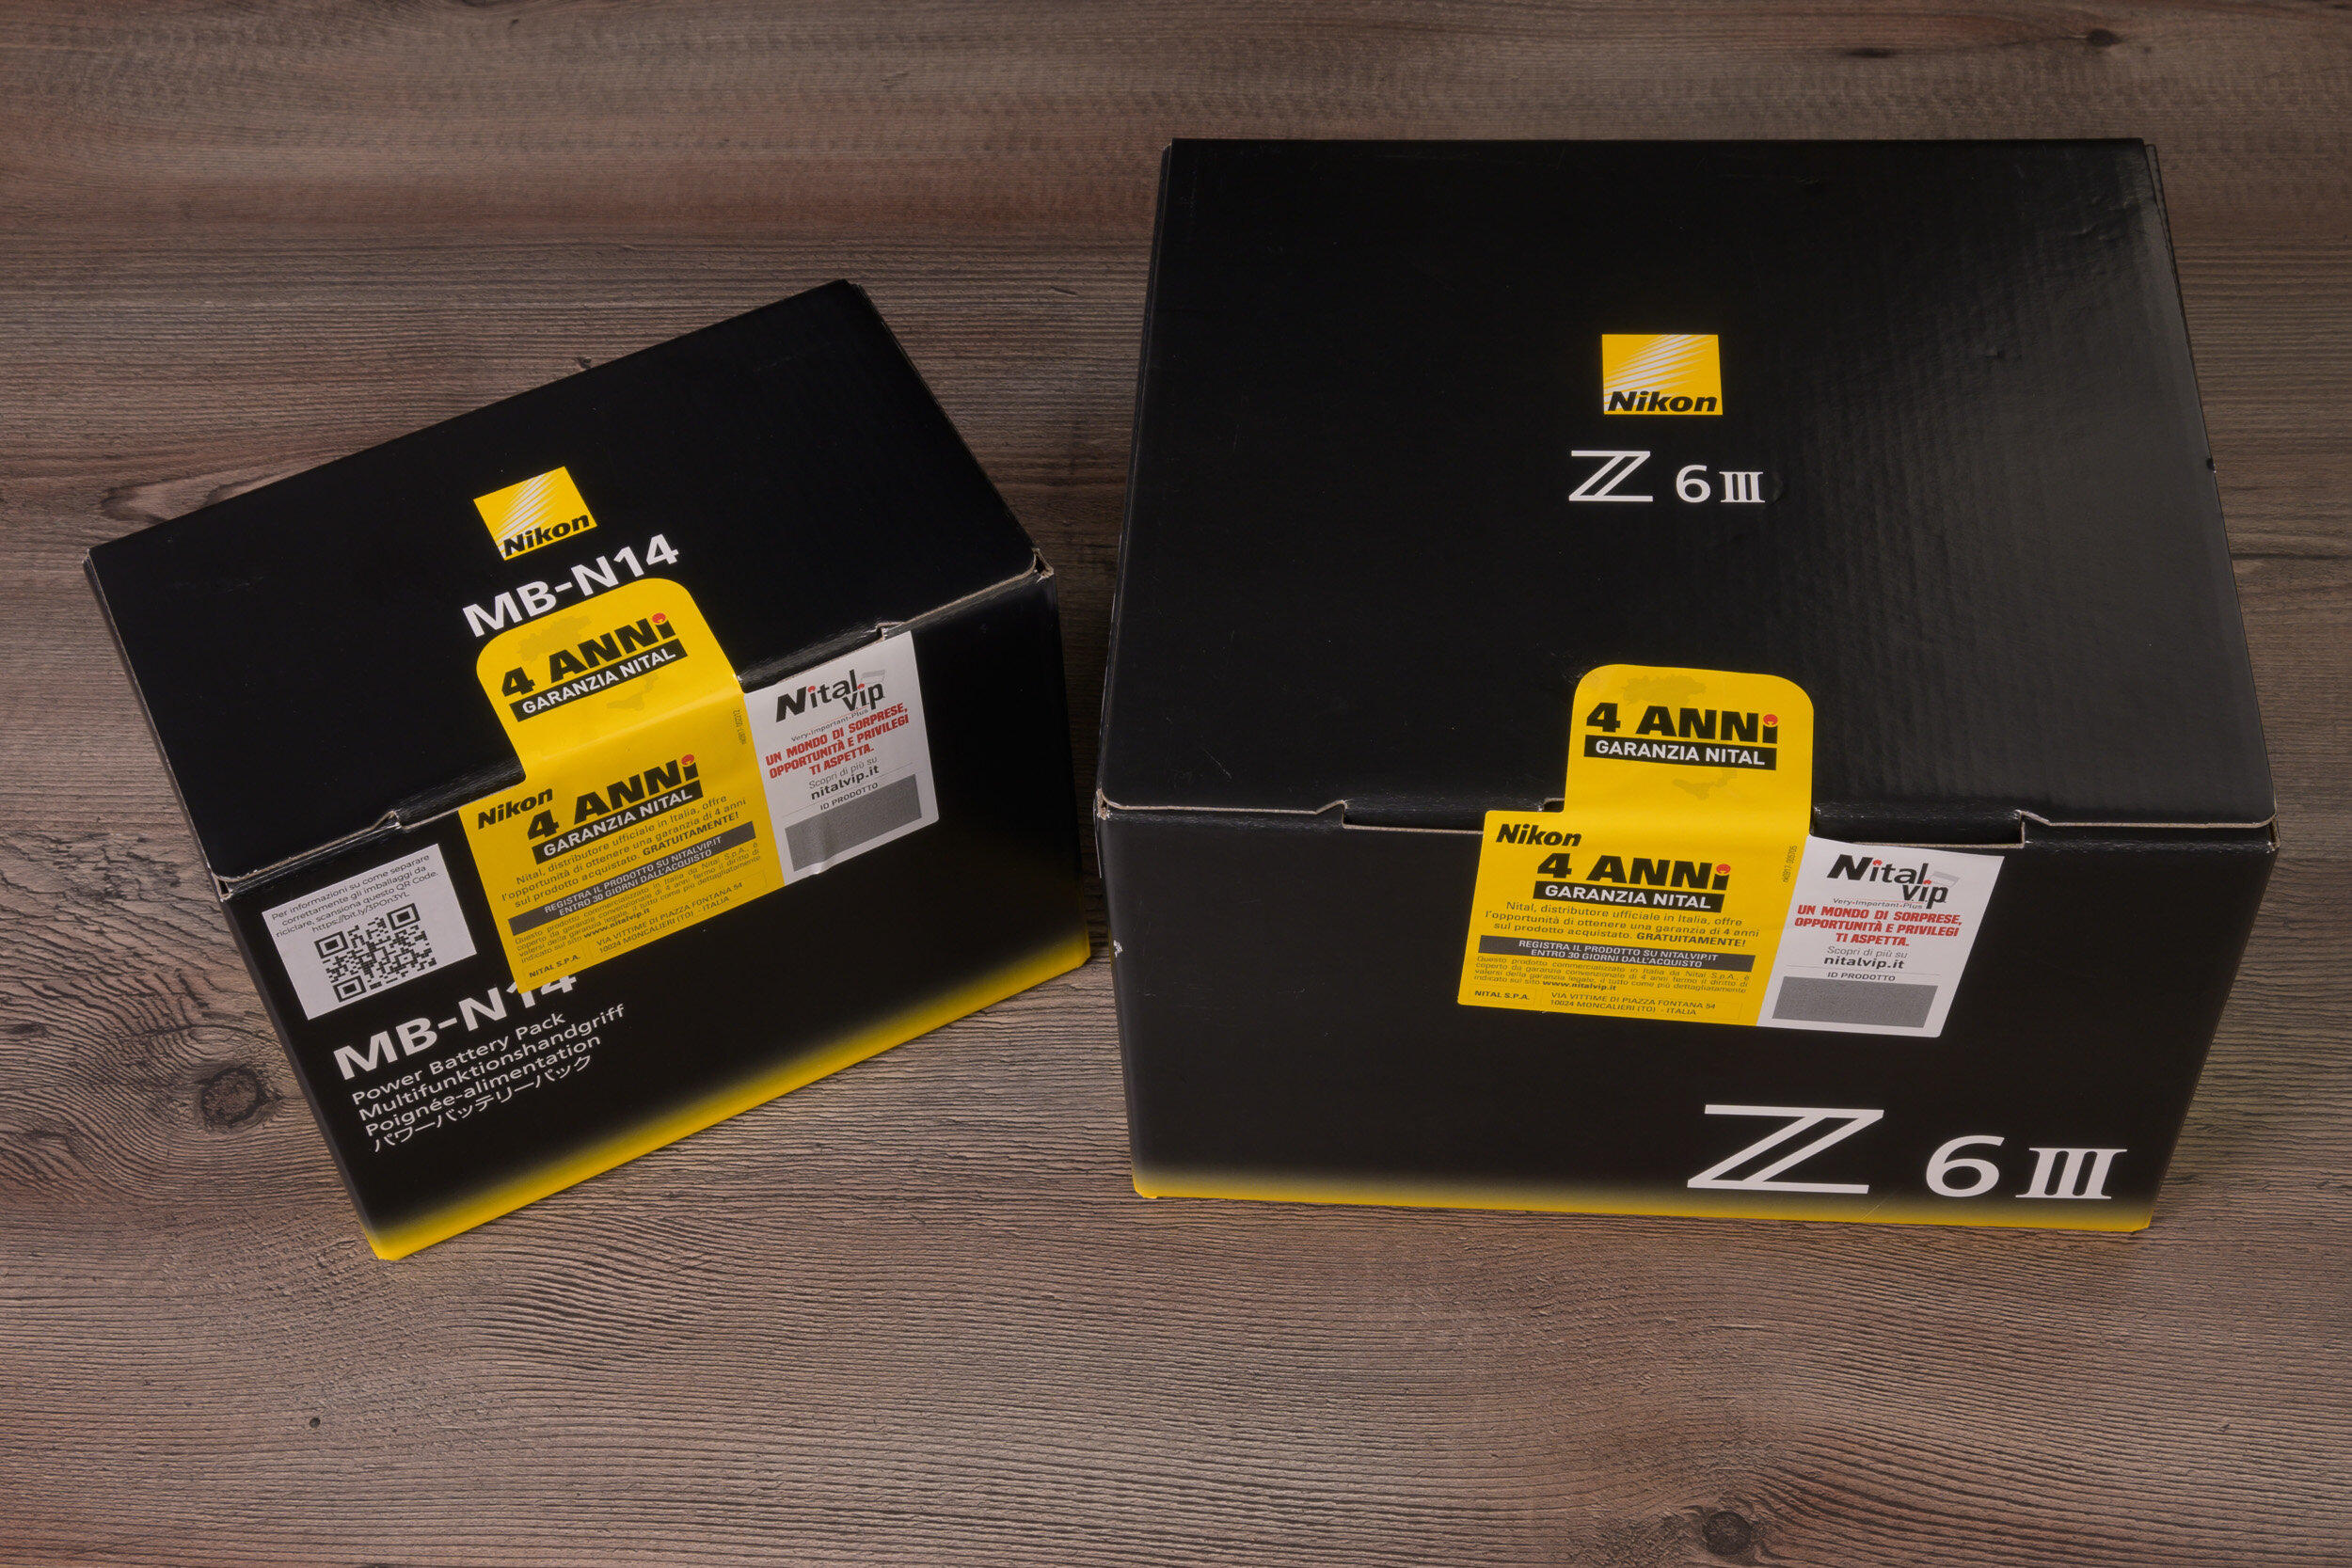 Maggiori informazioni su "Nikon Z6 III : unboxing e prime impressioni"